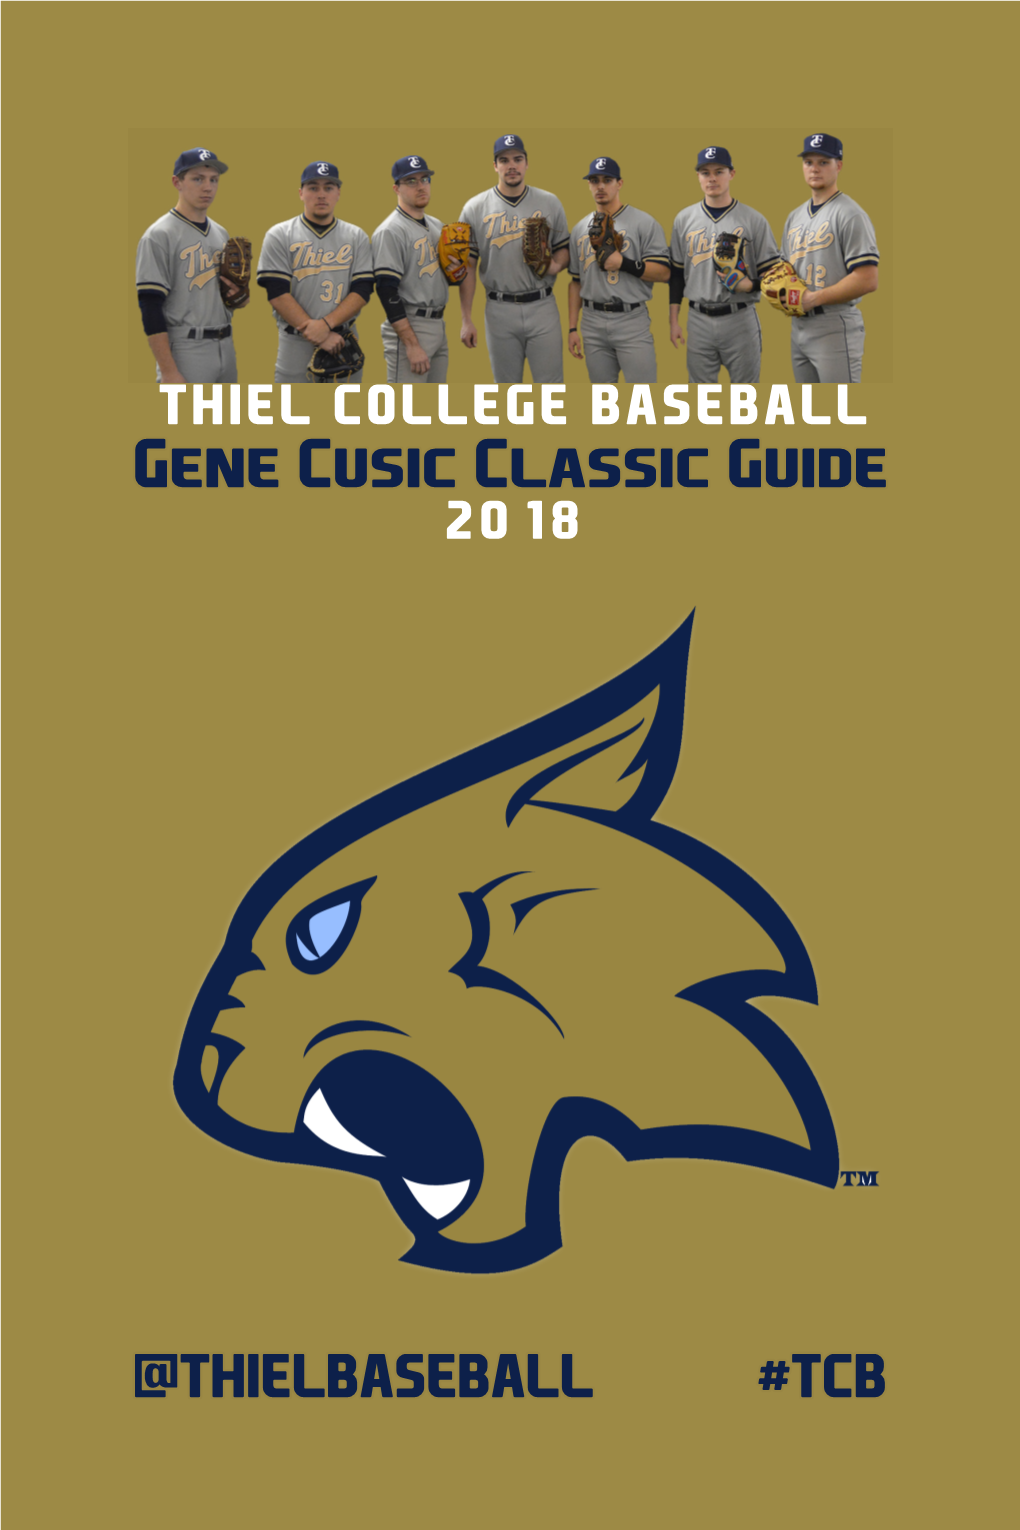 THIEL COLLEGE BASEBALL Gene Cusic Classic Guide 2018